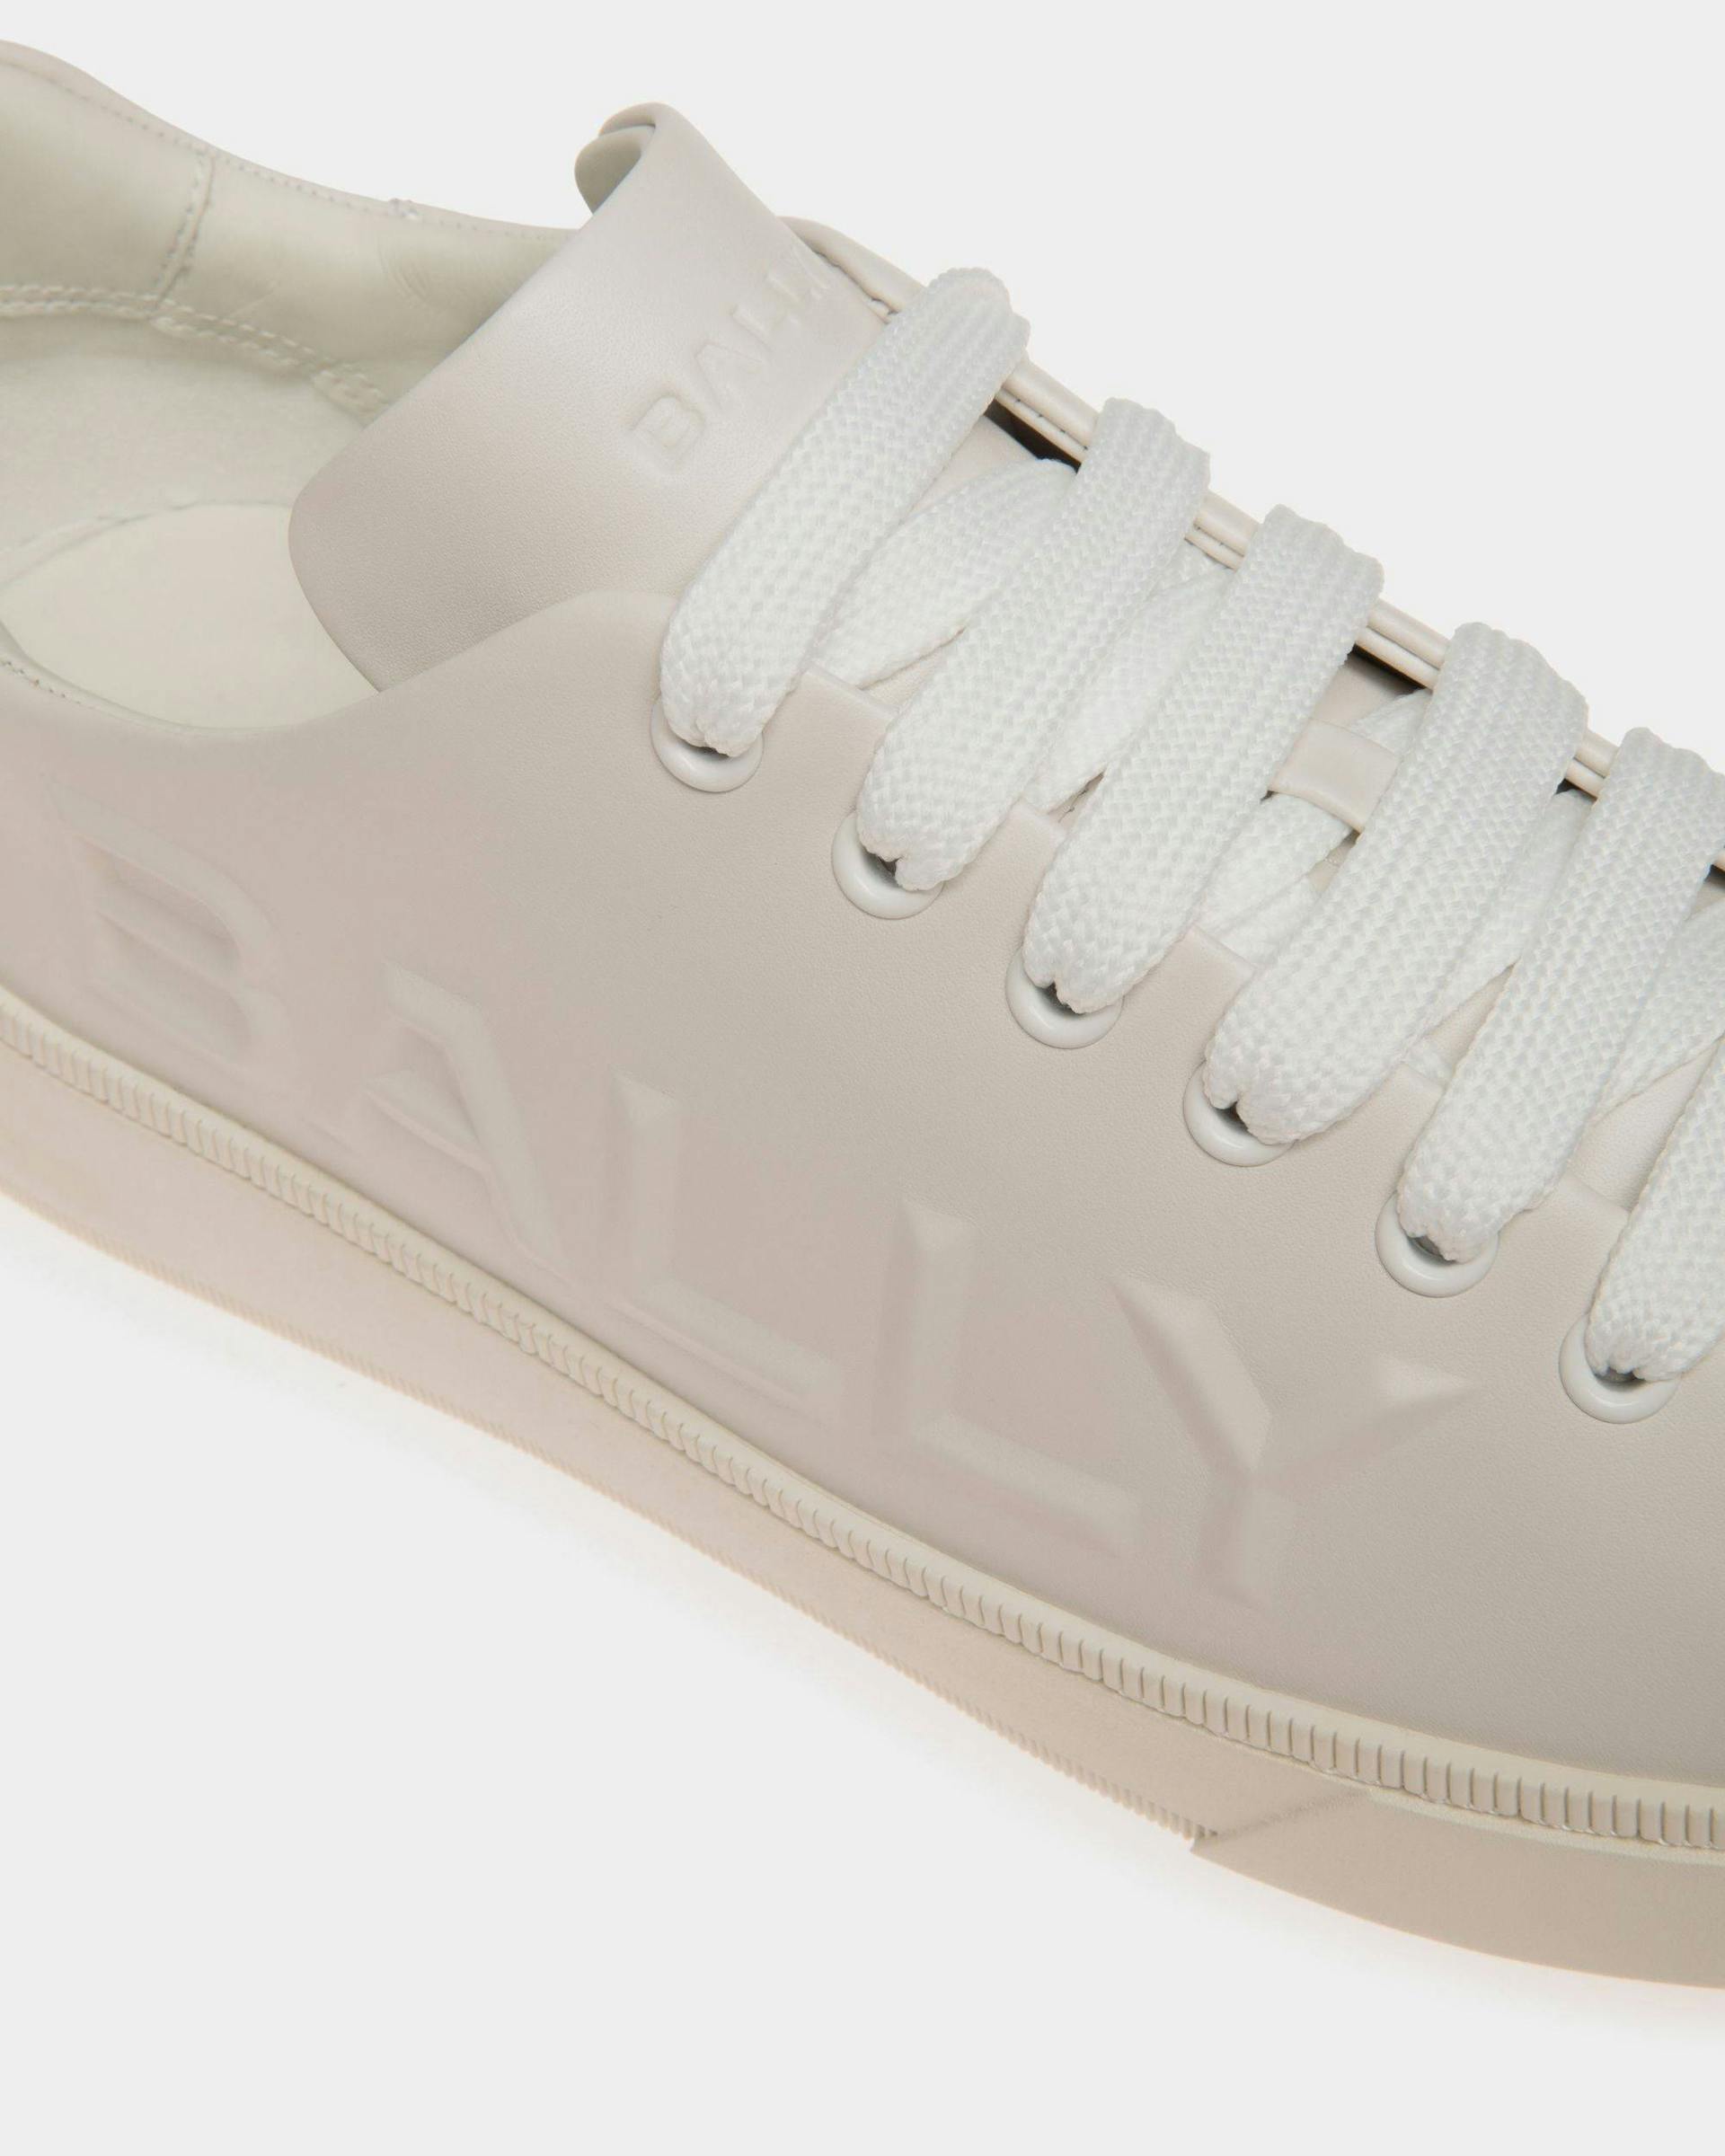 Men's Raise Sneaker in White Leather | Bally | Still Life Detail